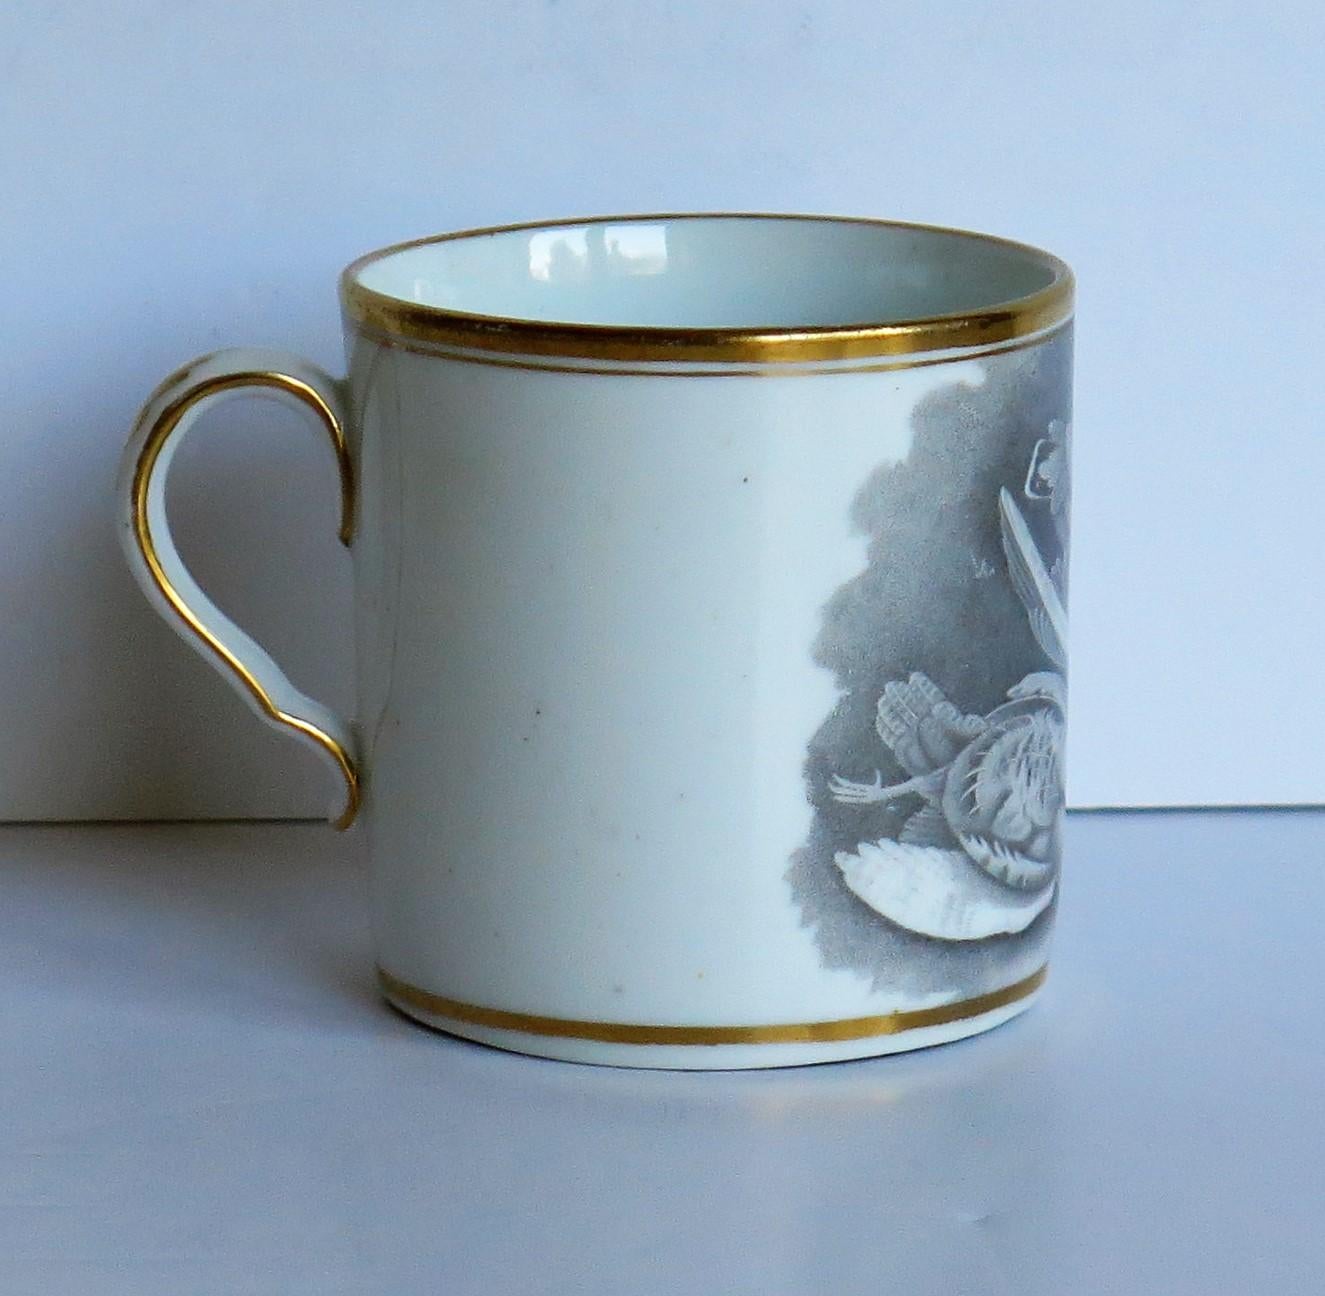 Il s'agit d'un très bon exemple de boîte à café en porcelaine d'époque George III, fabriquée par Spode, en Angleterre, au début du XIXe siècle, vers 1810.

La canette est nominalement droite et possède la poignée en boucle de Spode avec un coup de